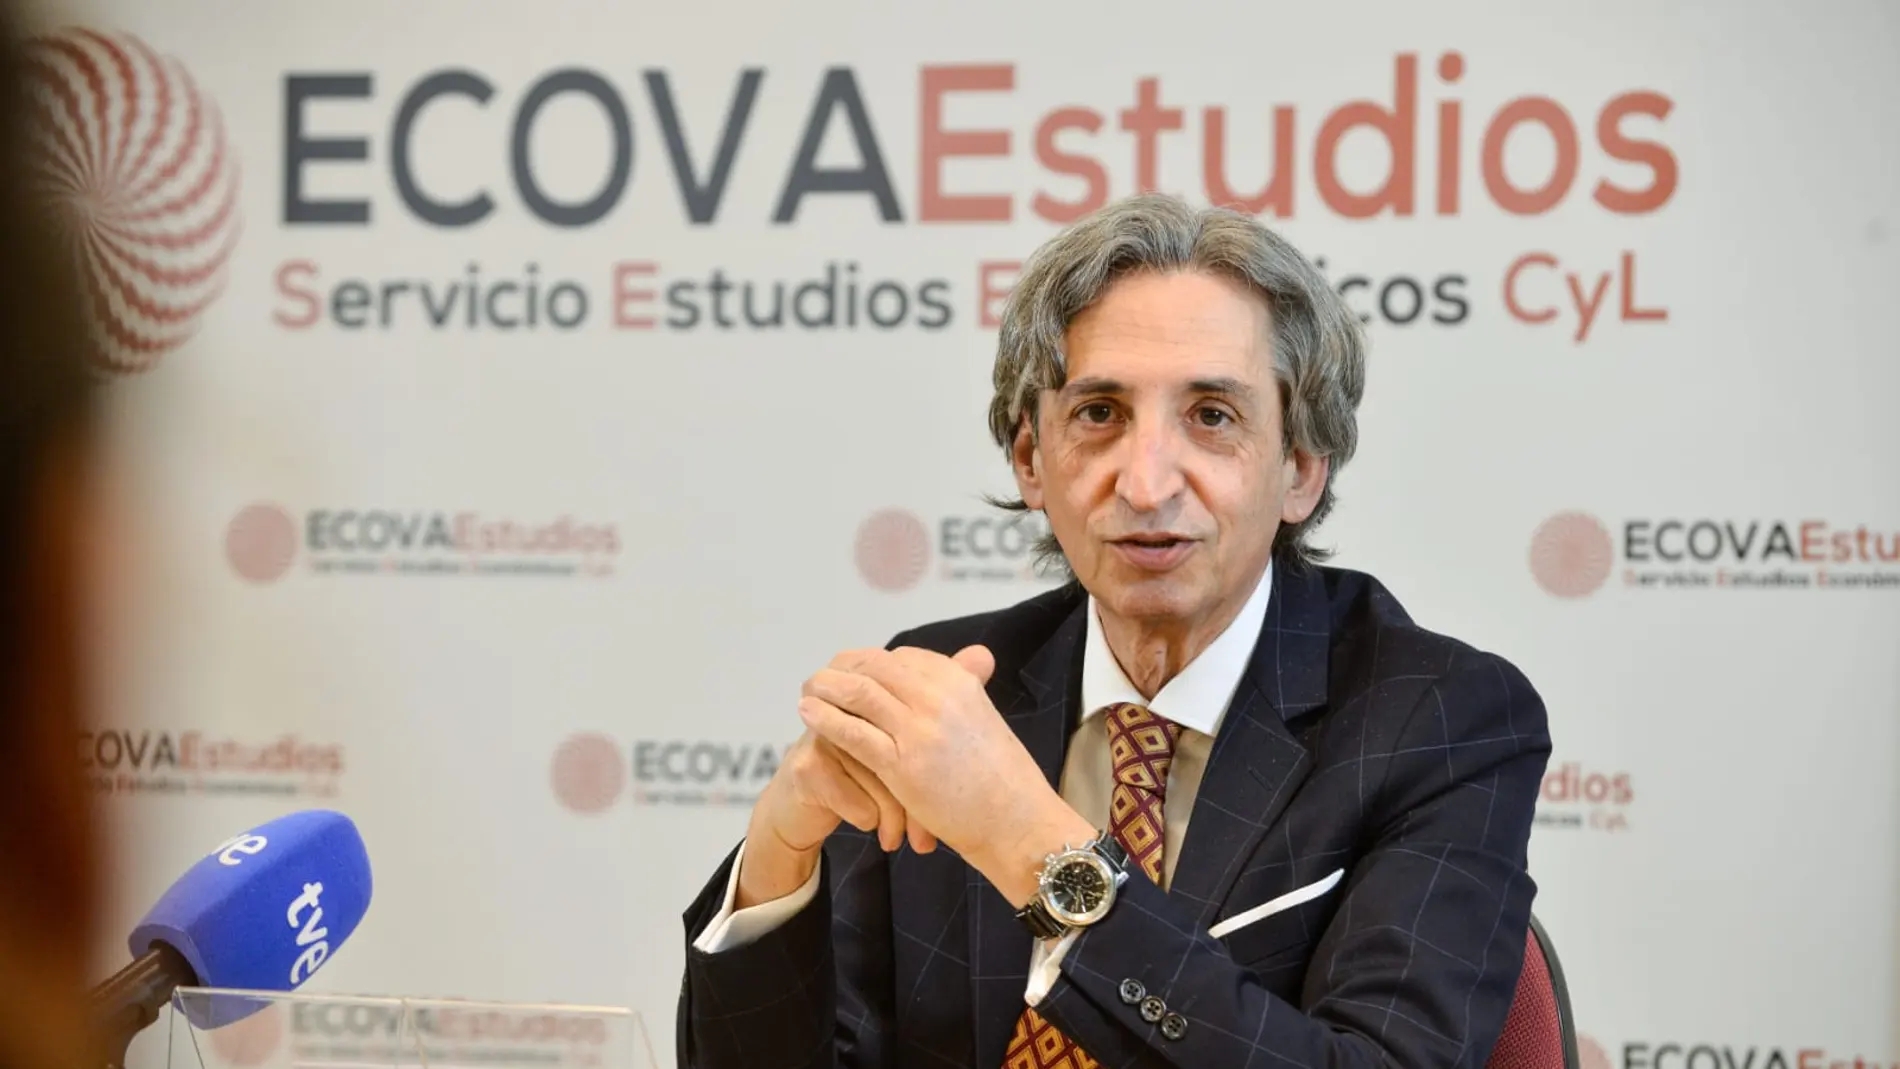 El director del Servicio de Estudios Económicos de Castilla y León (ECOVAEstudios), Juan Carlos de Margarida, presenta el Observatorio